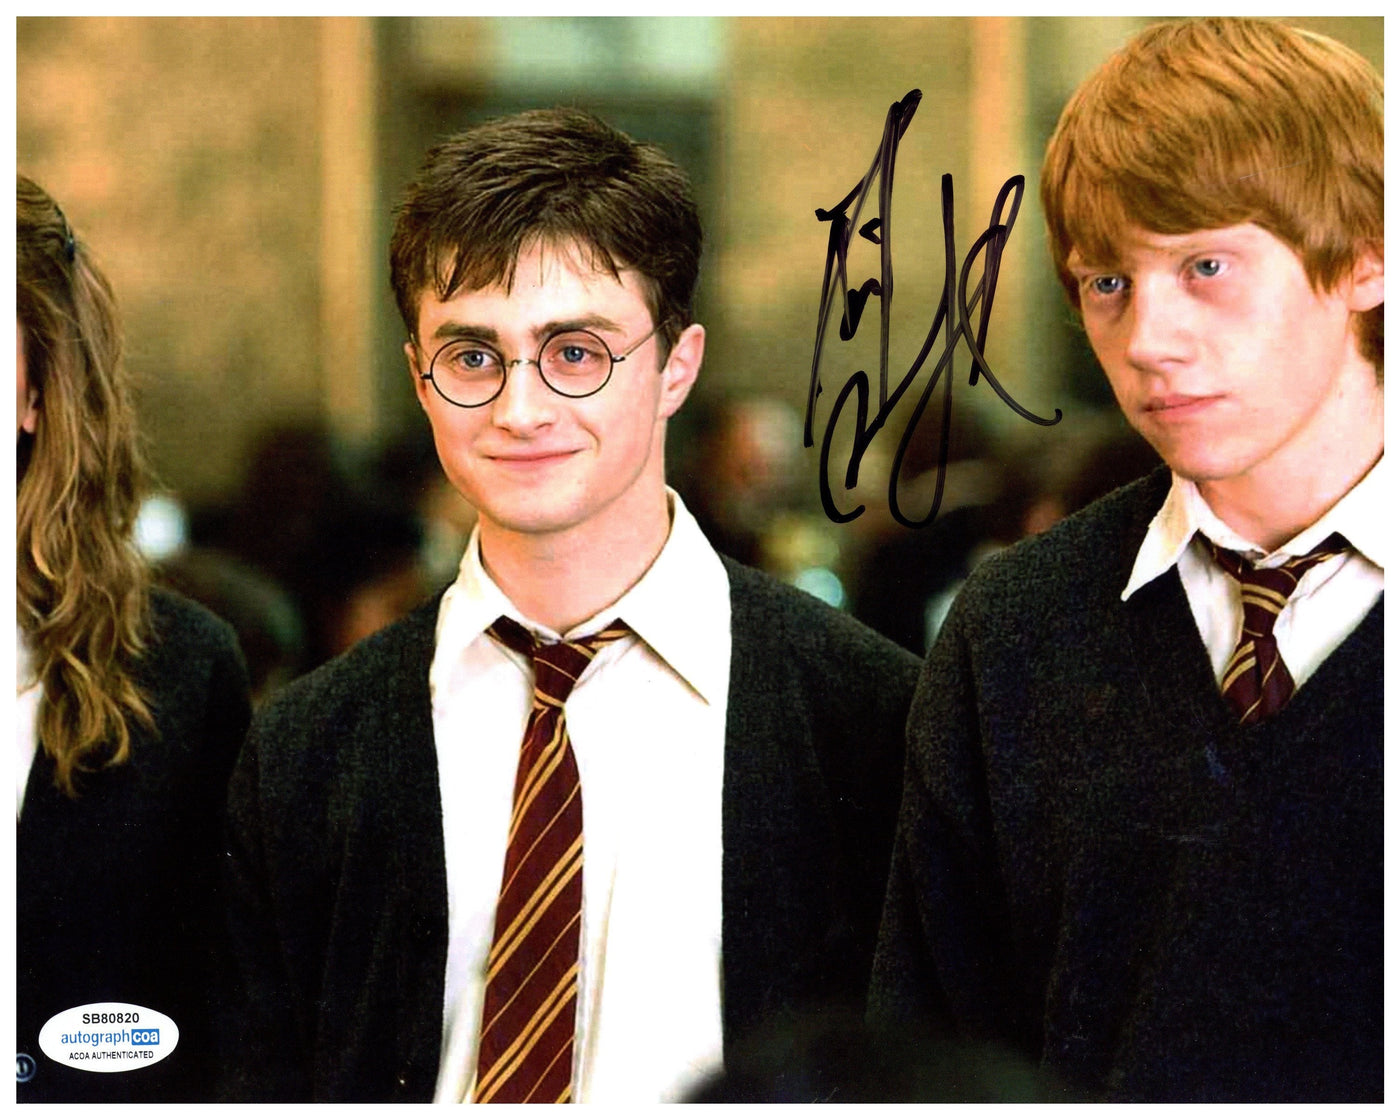 Daniel Radcliffe Autographed 8x10 Photo Harry Potter Signed Authentic AutographCOA